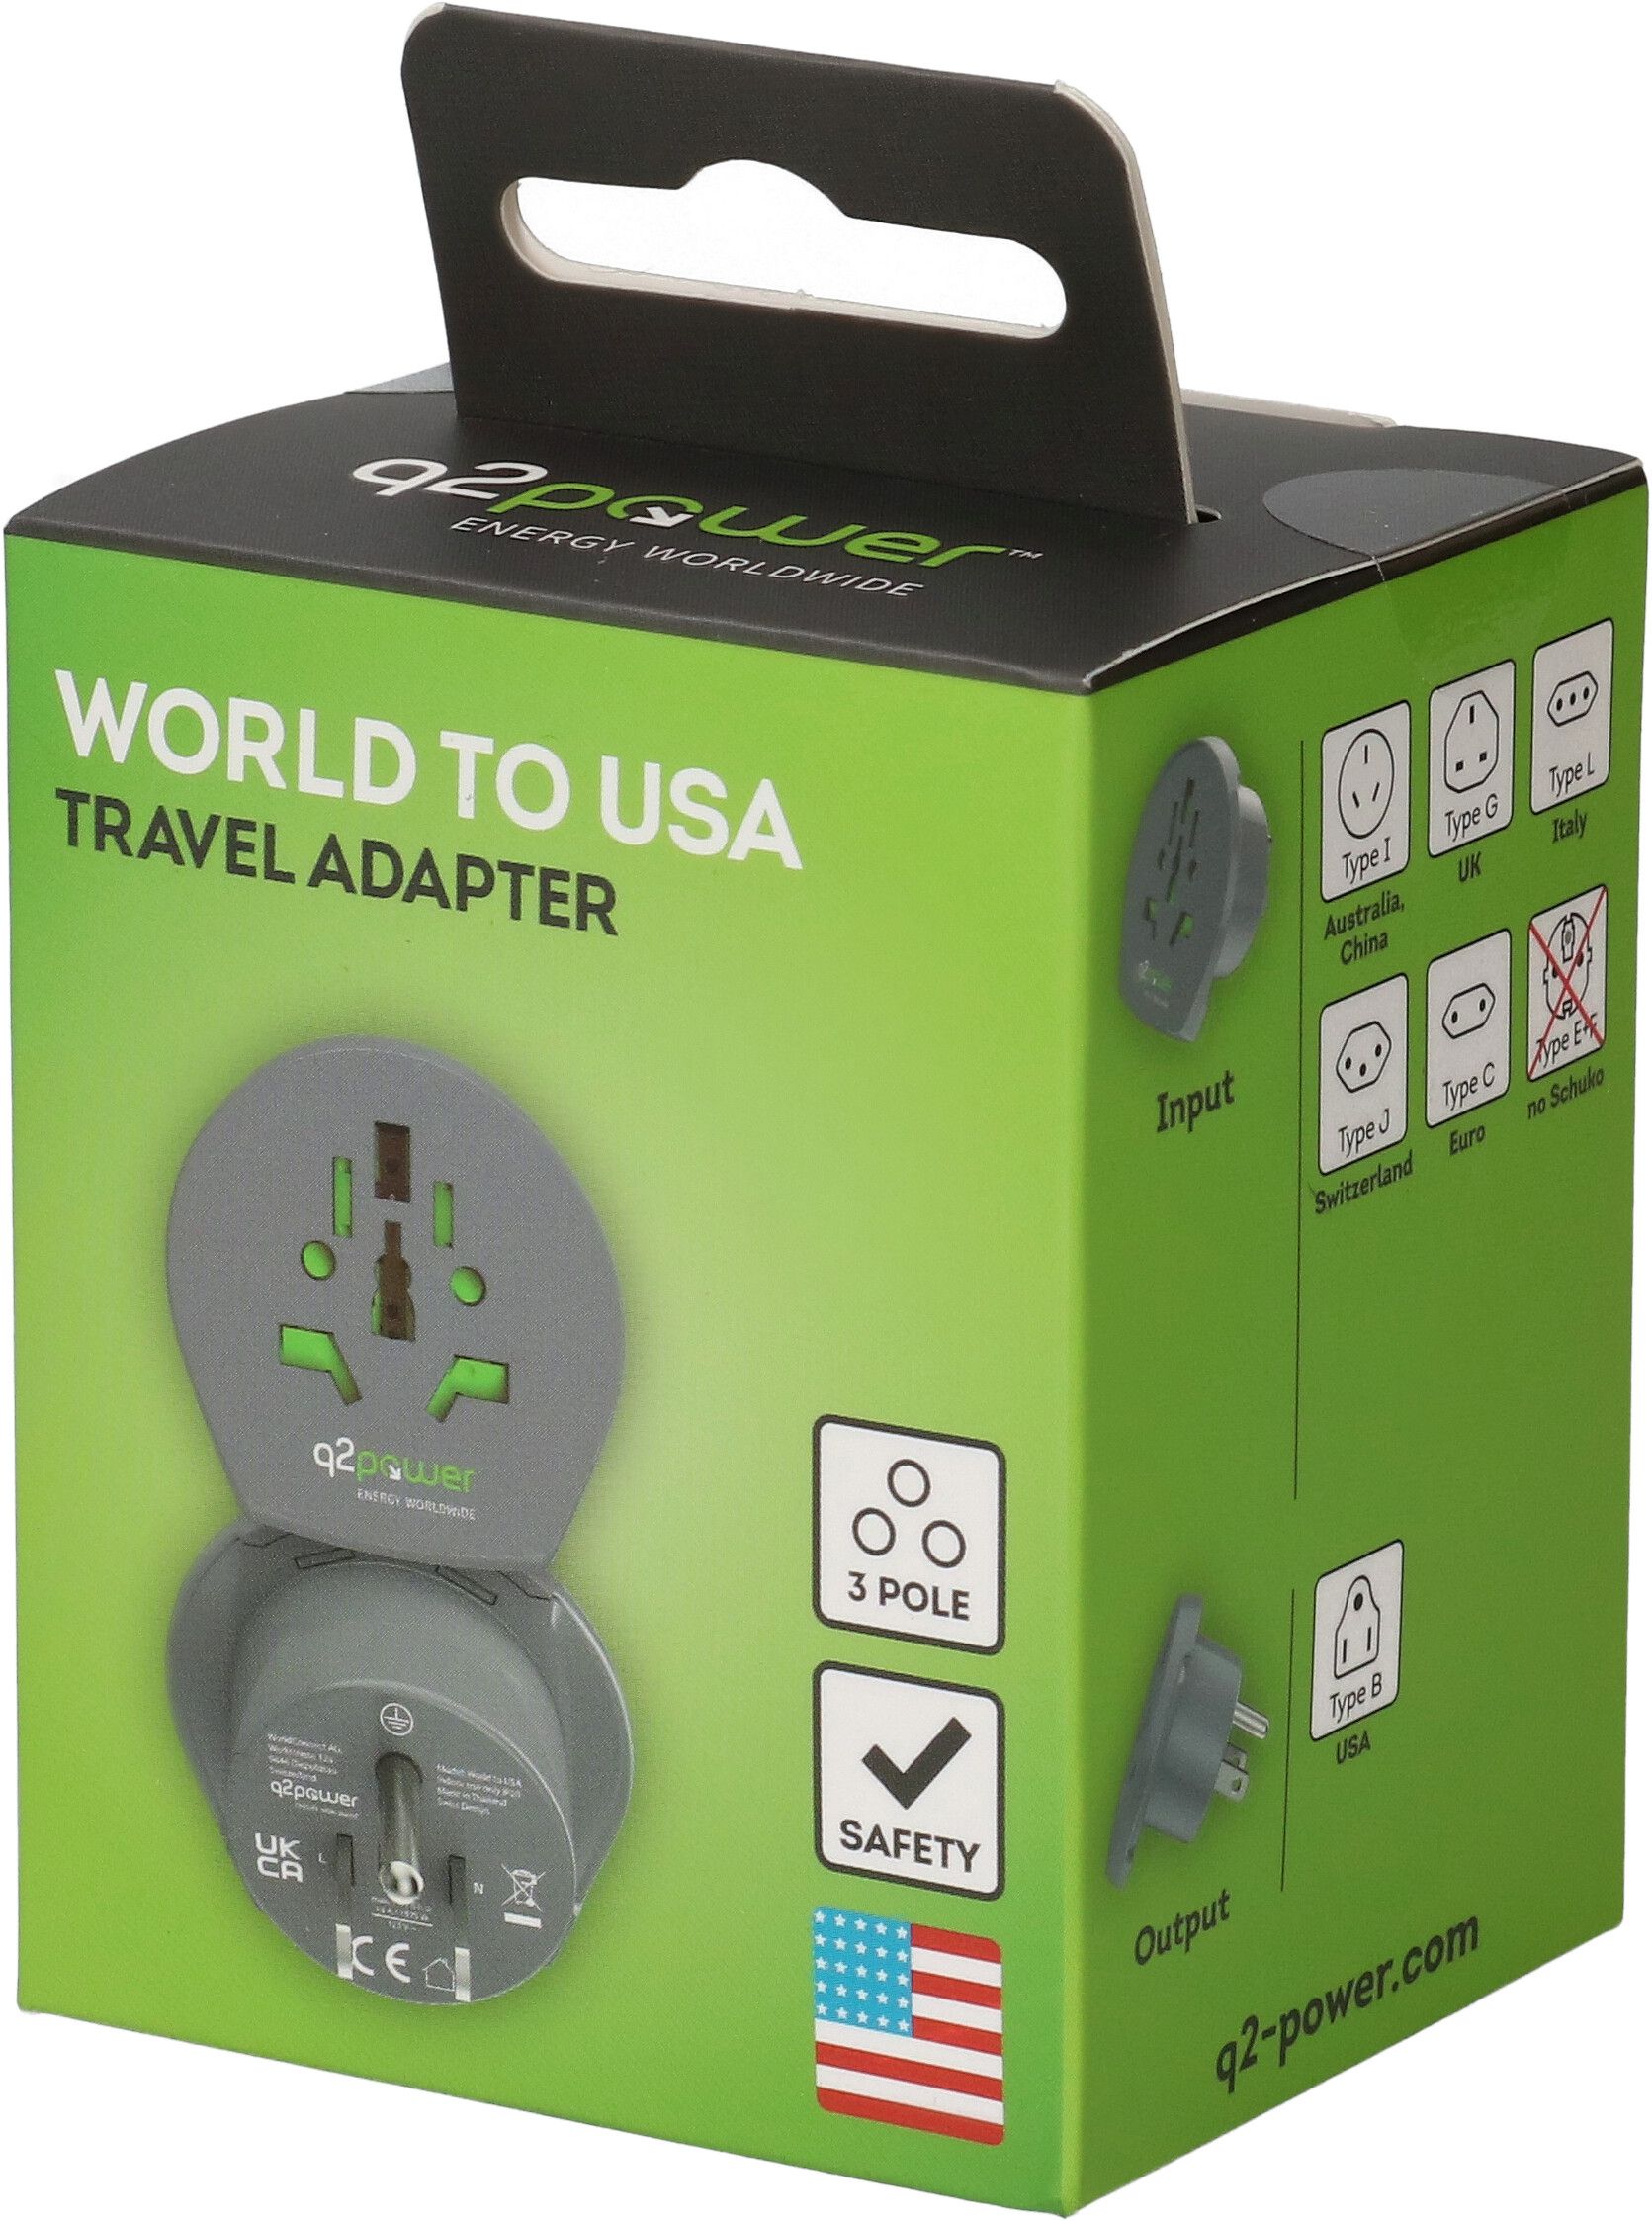 Q2 Power Welt Adapter USA